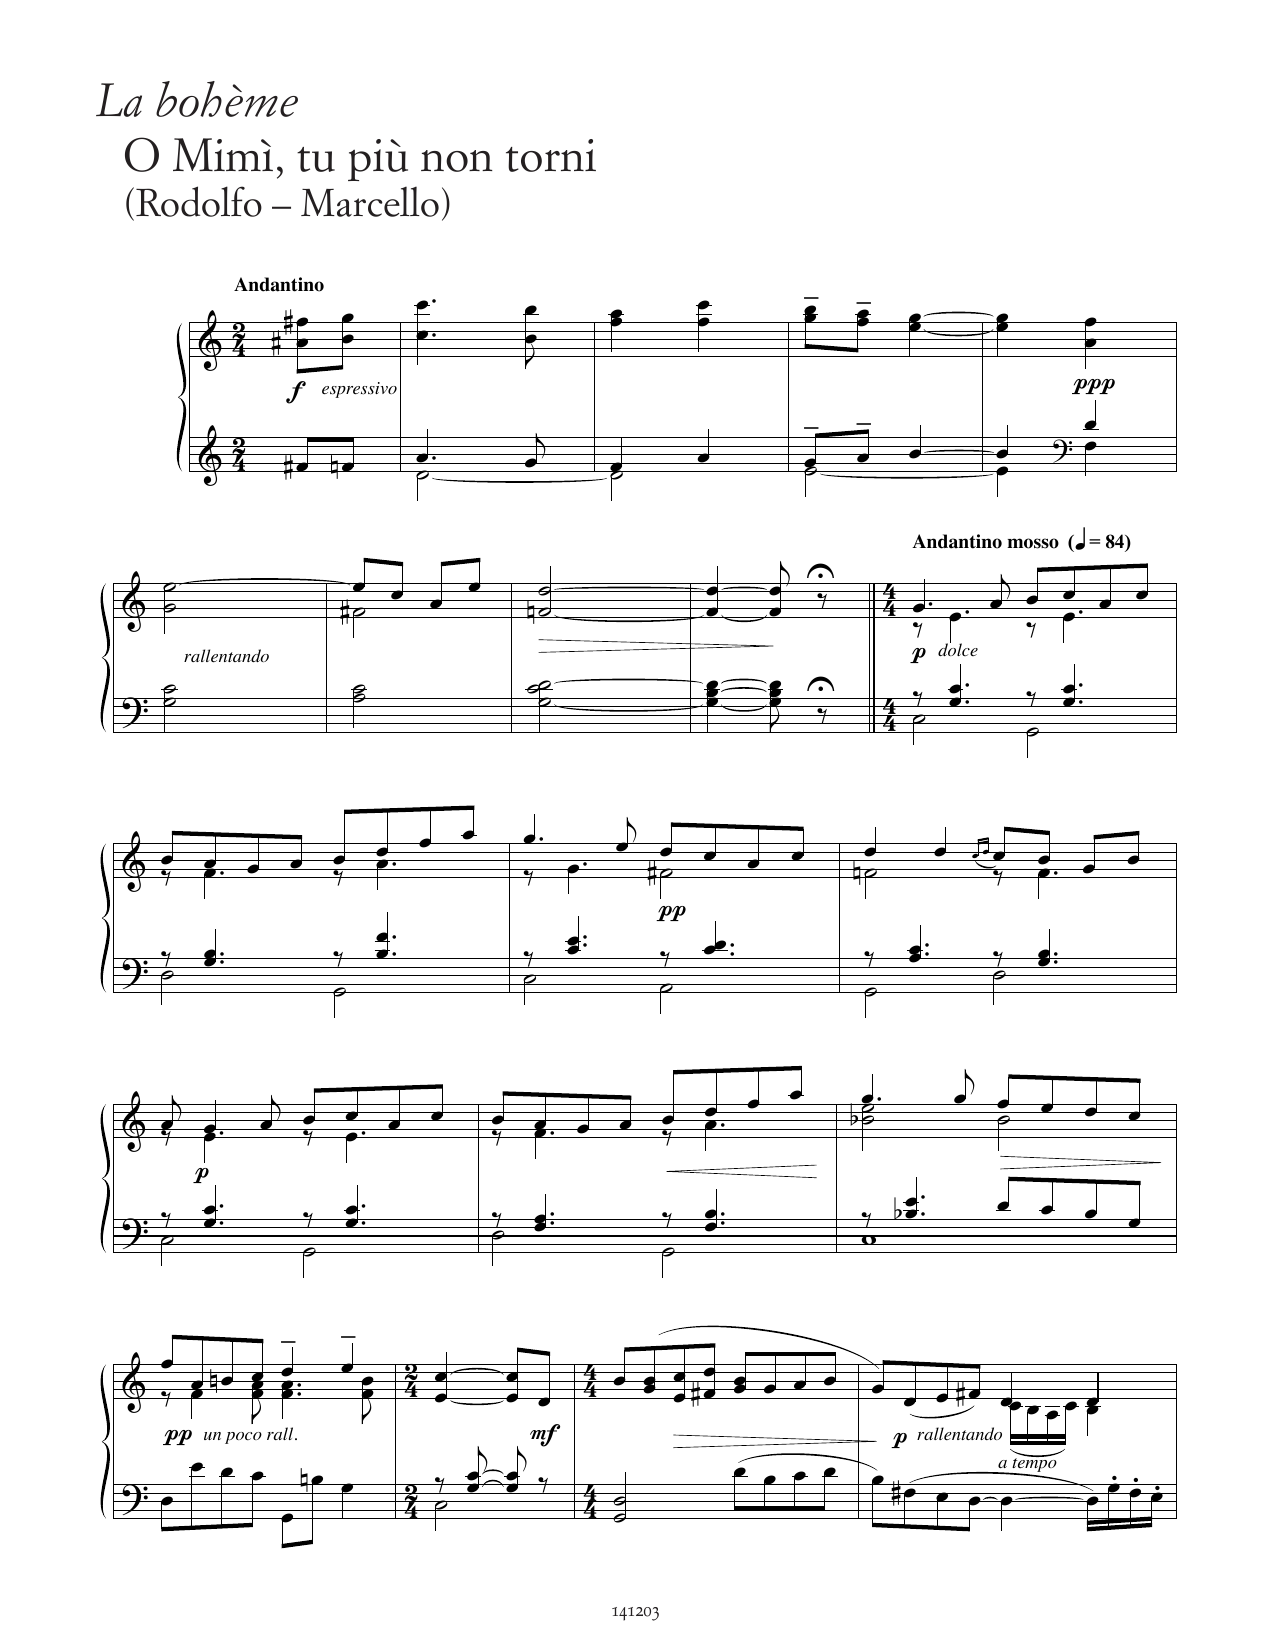 Giacomo Puccini O Mimì, tu più non torni (from La Bohème) Sheet Music Notes & Chords for Piano Solo - Download or Print PDF